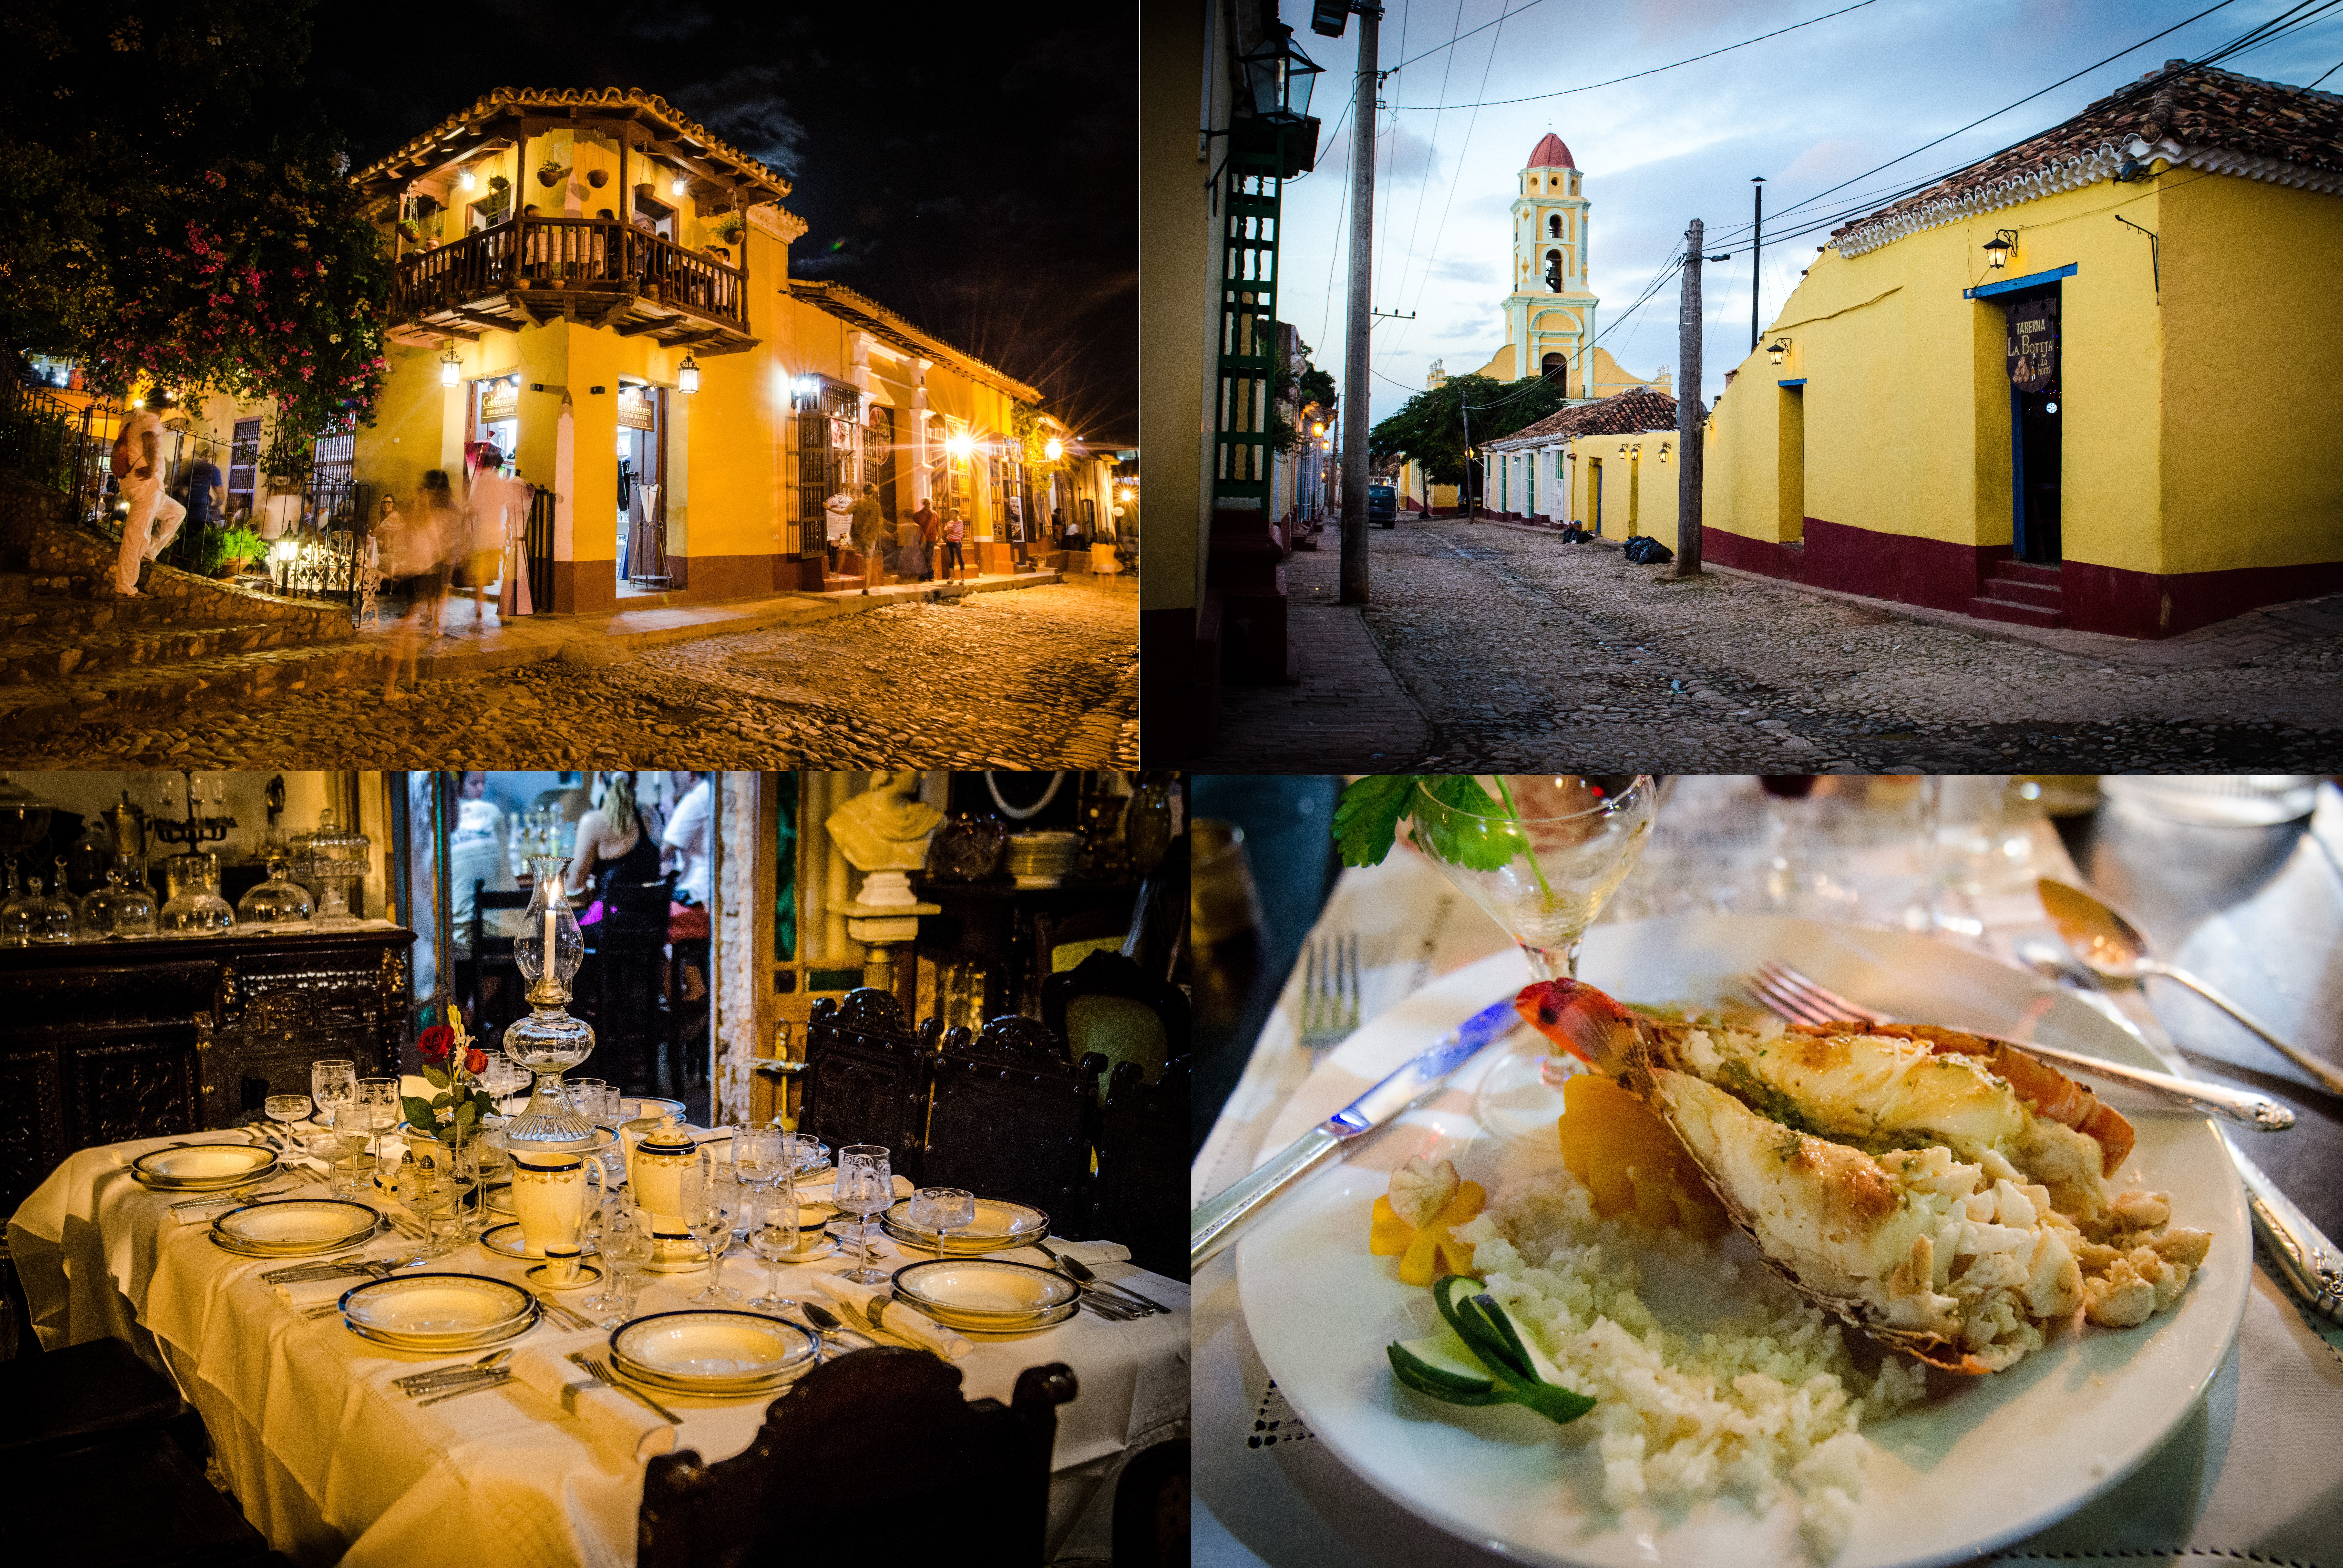 時光彷彿凝固了一般，Trinidad仍然保持了17世紀的米黃色建築和坑窪石板路。當夜幕降臨，這裡便是音樂的天堂。大家在城鎮中心的廣場上唱歌跳舞。10刀一盤的龍蝦配上mojito，微醺得讓你誤以為上了天堂。